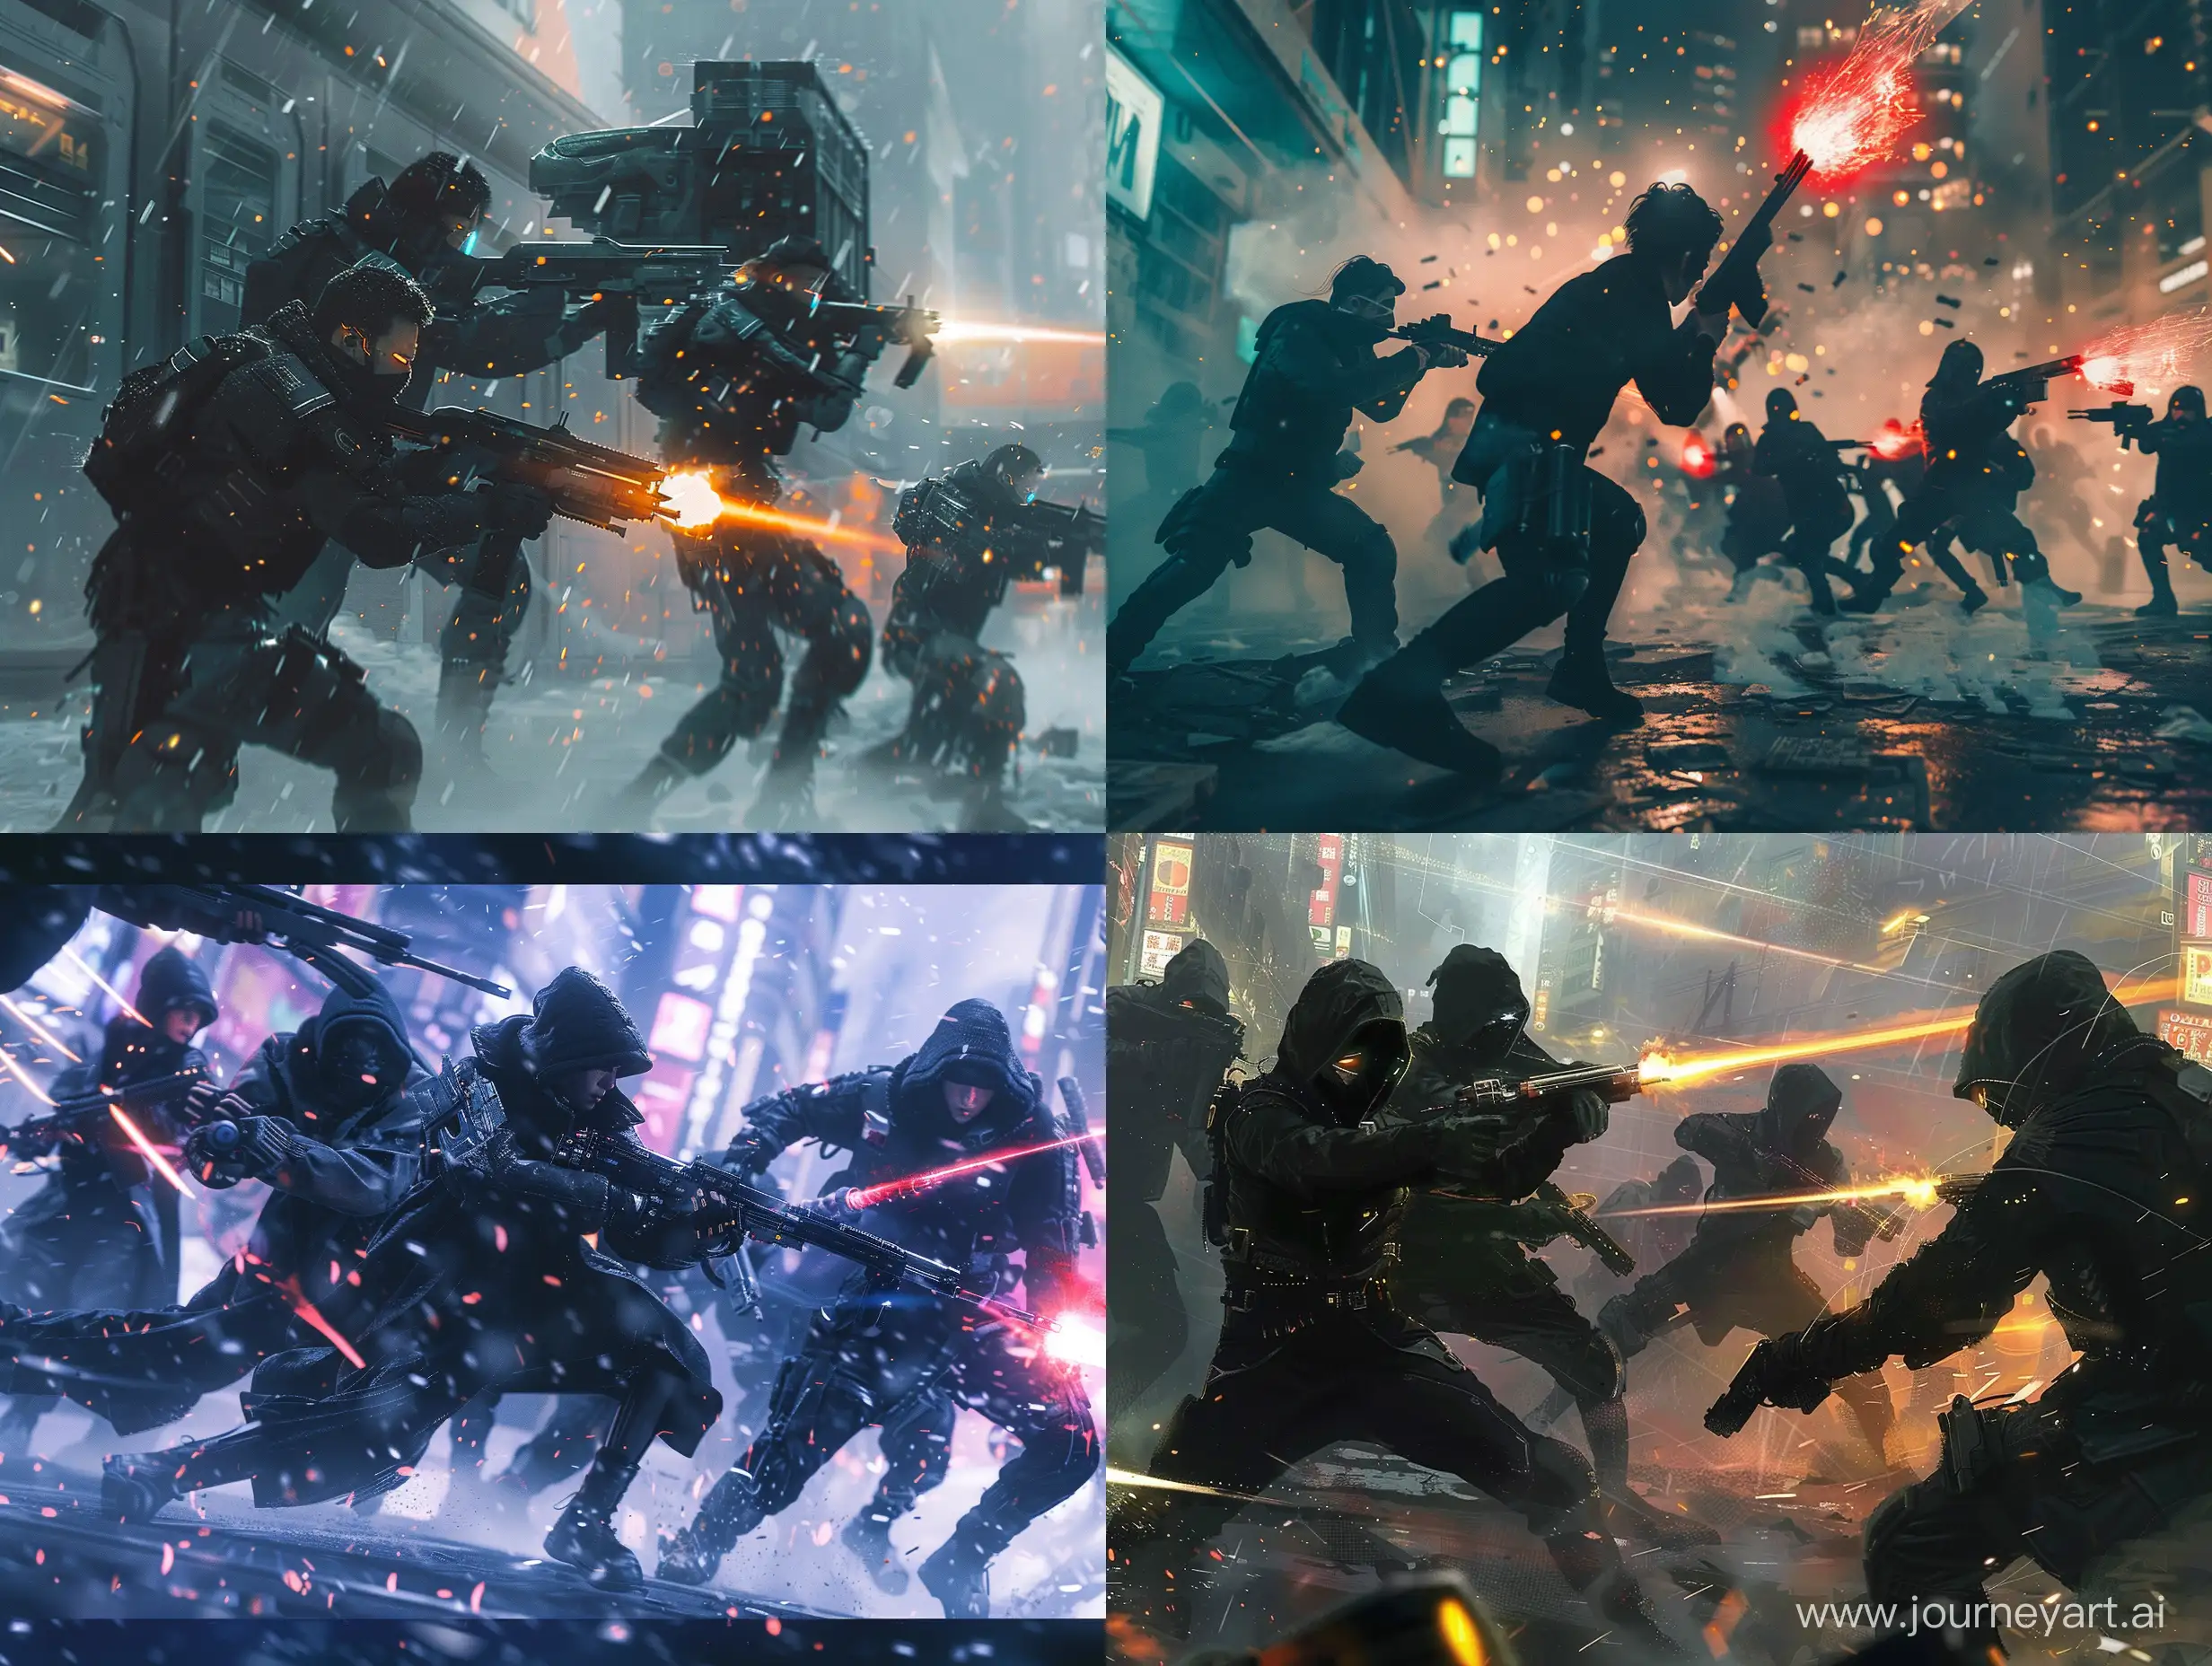 Futuristic-Rebel-Battle-Against-Corporate-Forces-in-Cinematic-Cyberpunk-Scene